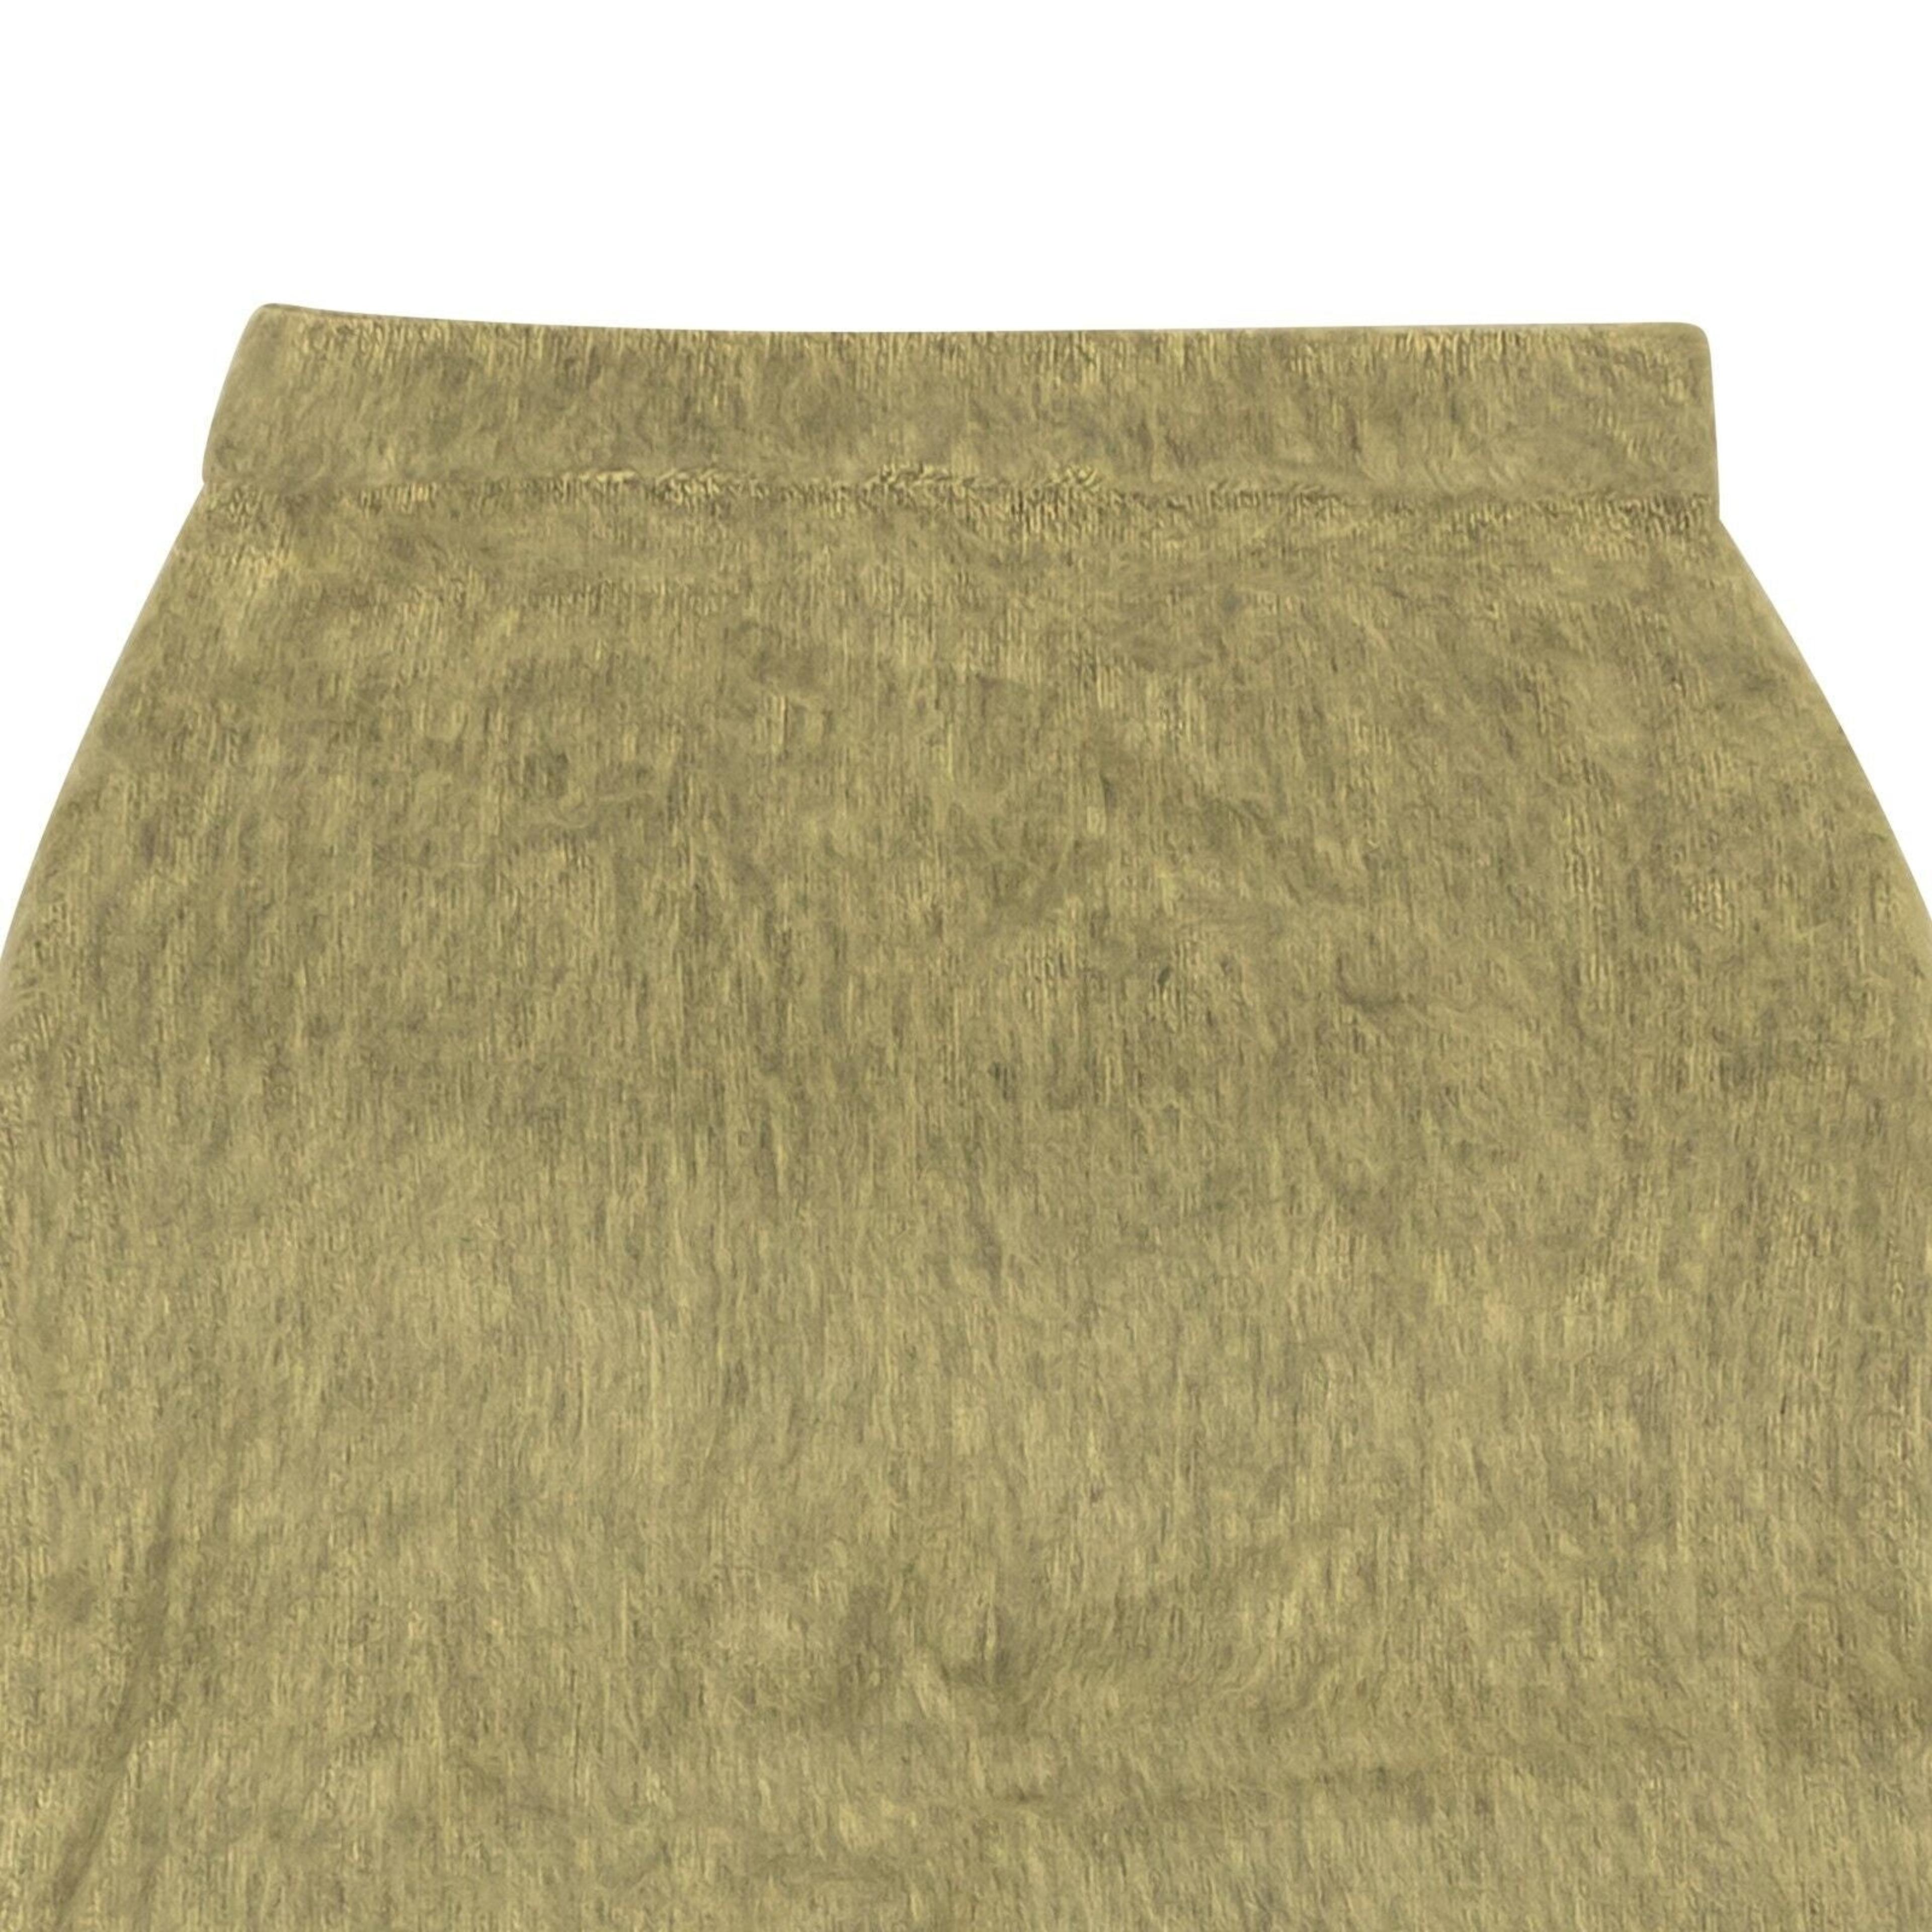 Alternate View 1 of Stussy Marsh Skirt - Sand